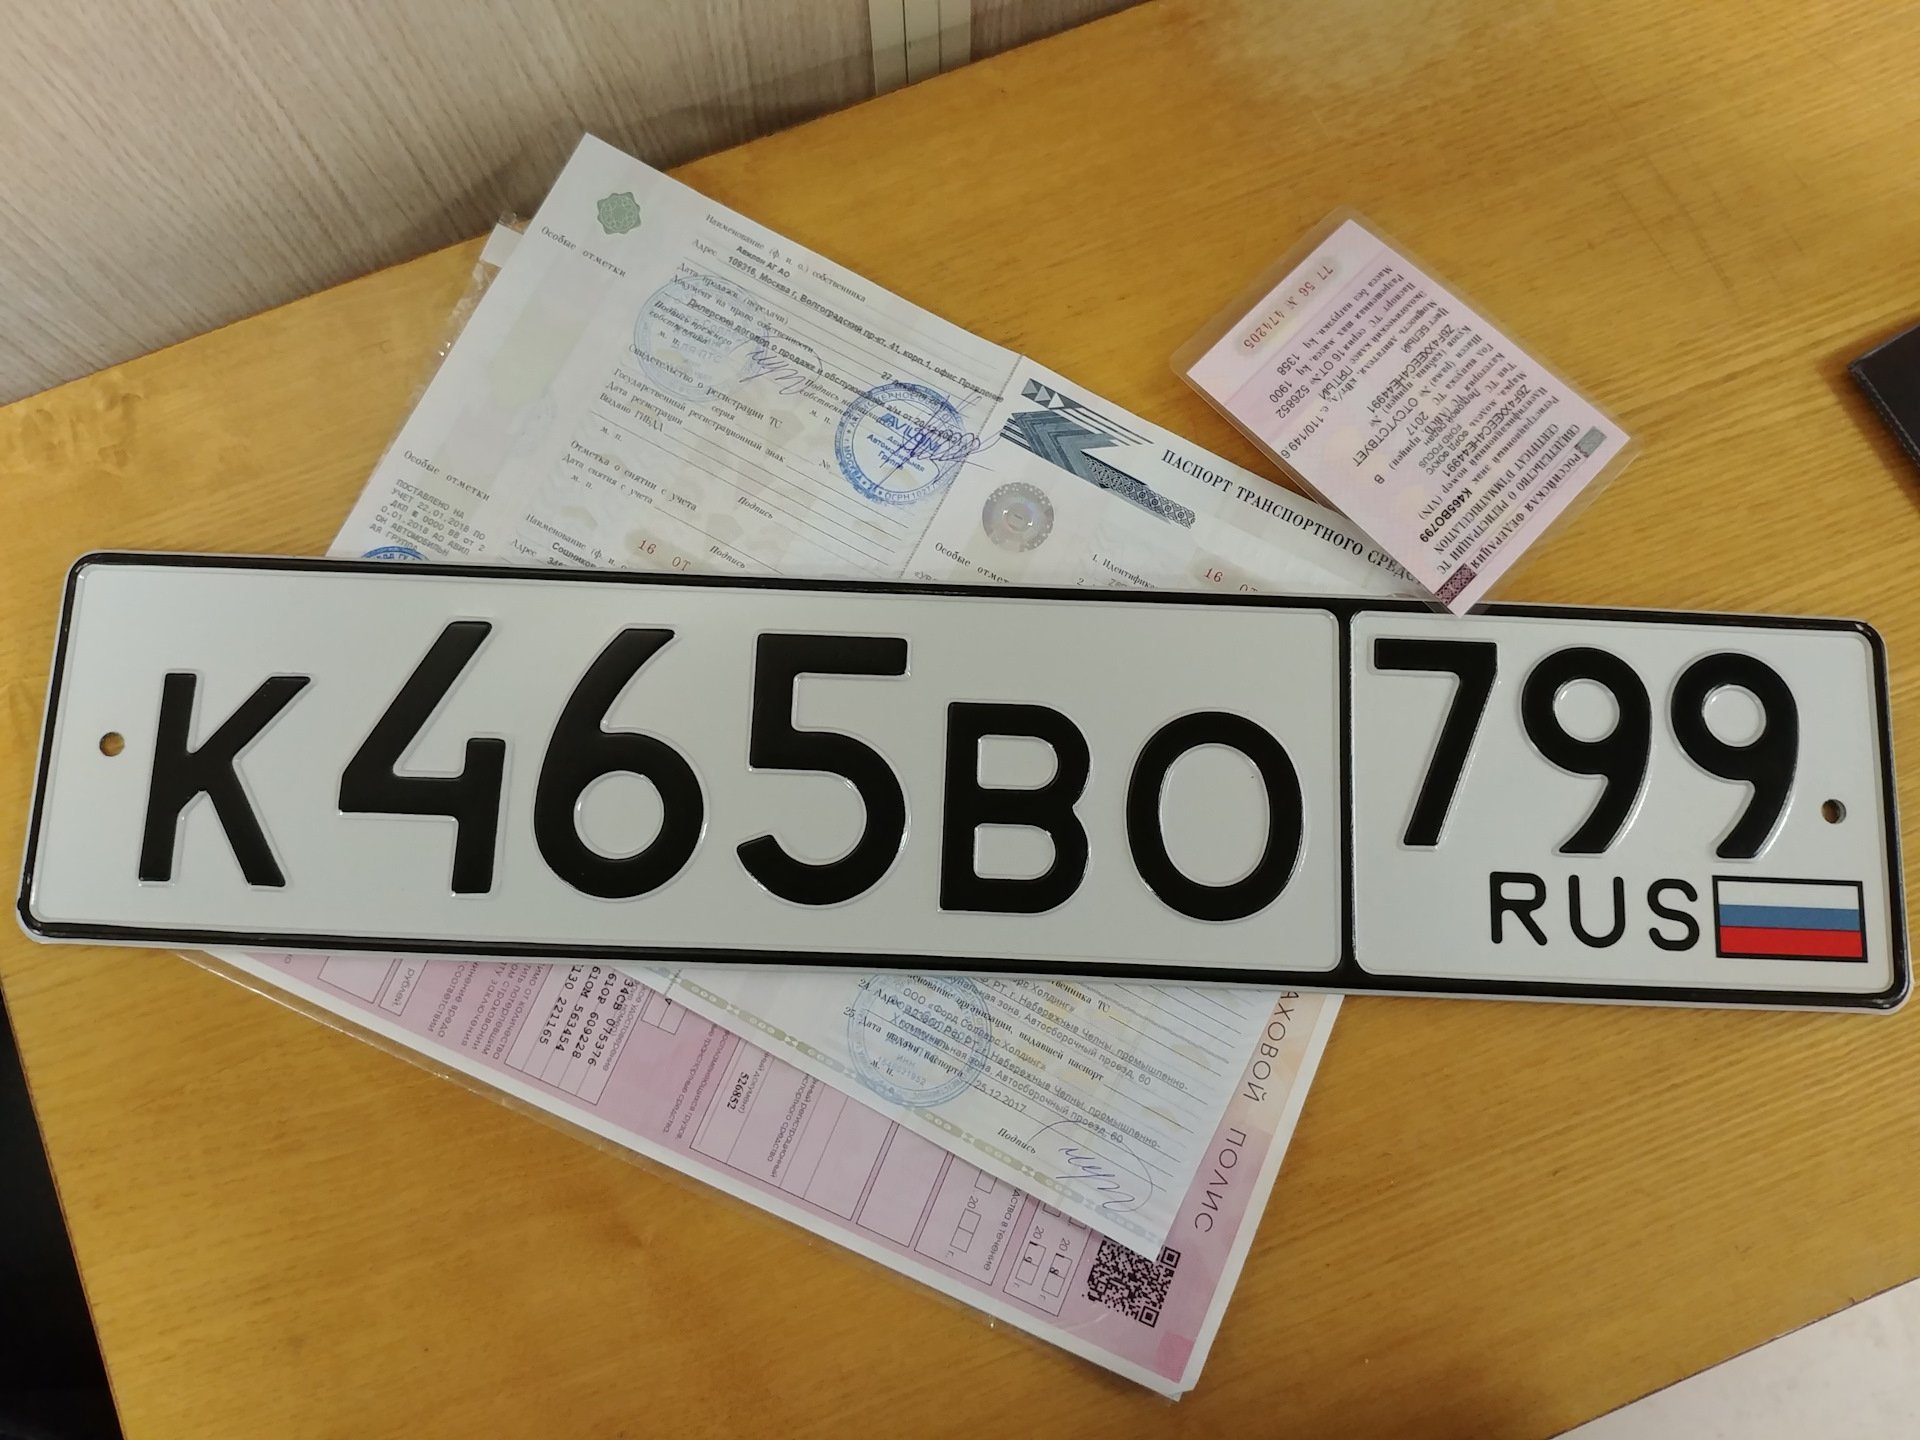 Замененные номера москва. Новые номера Московской области. Надпись вместо номера на авто. Замена автомобильного номера в Москве. О 600 во 799.